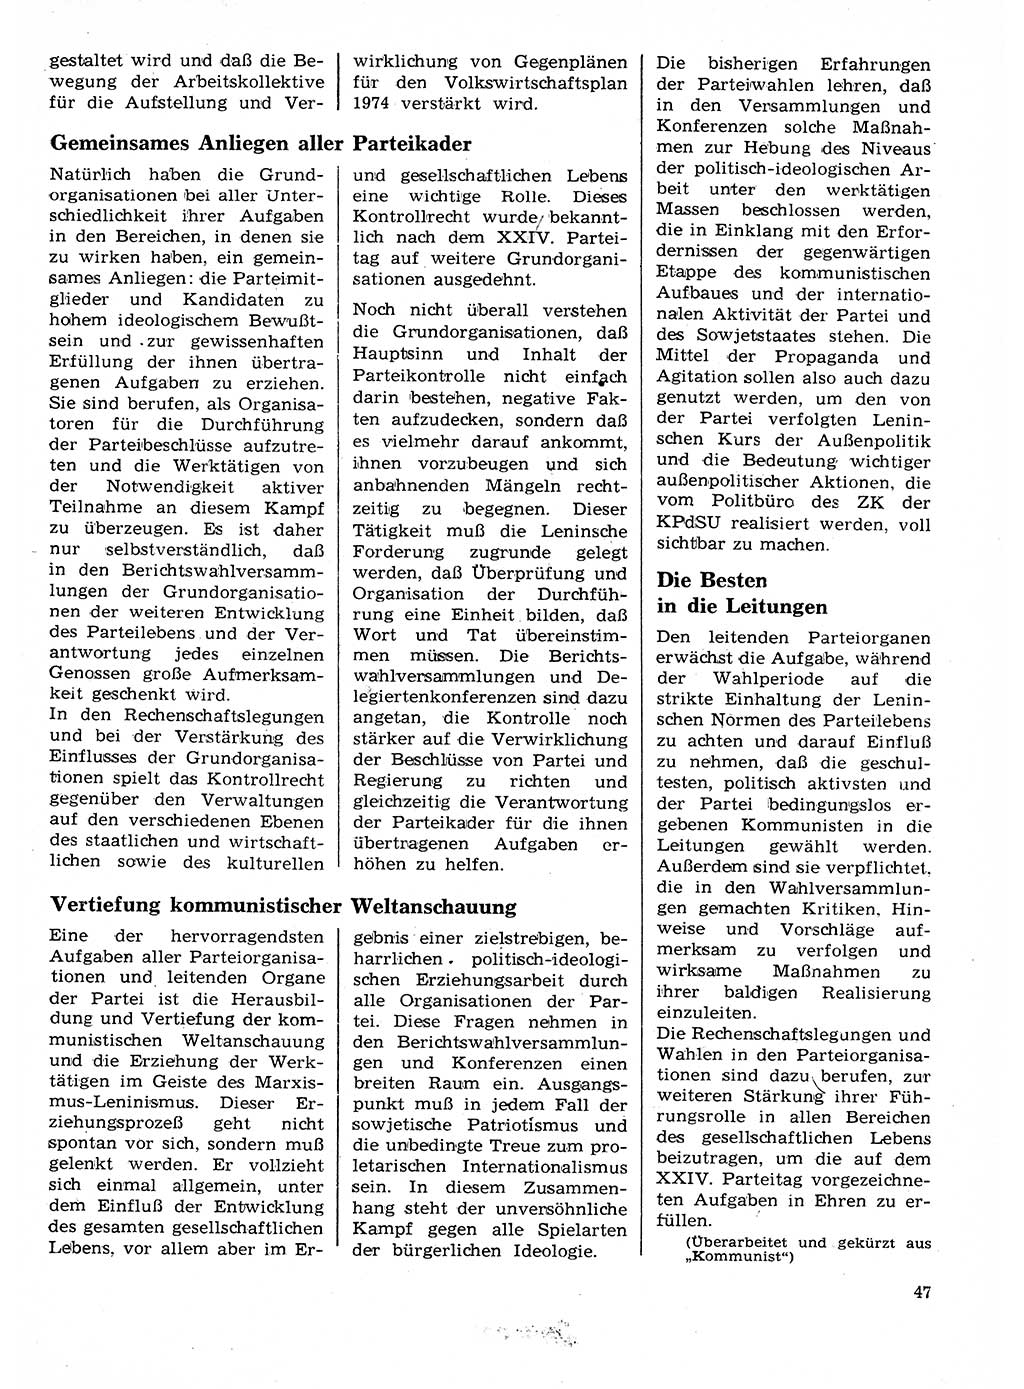 Neuer Weg (NW), Organ des Zentralkomitees (ZK) der SED (Sozialistische Einheitspartei Deutschlands) für Fragen des Parteilebens, 29. Jahrgang [Deutsche Demokratische Republik (DDR)] 1974, Seite 47 (NW ZK SED DDR 1974, S. 47)